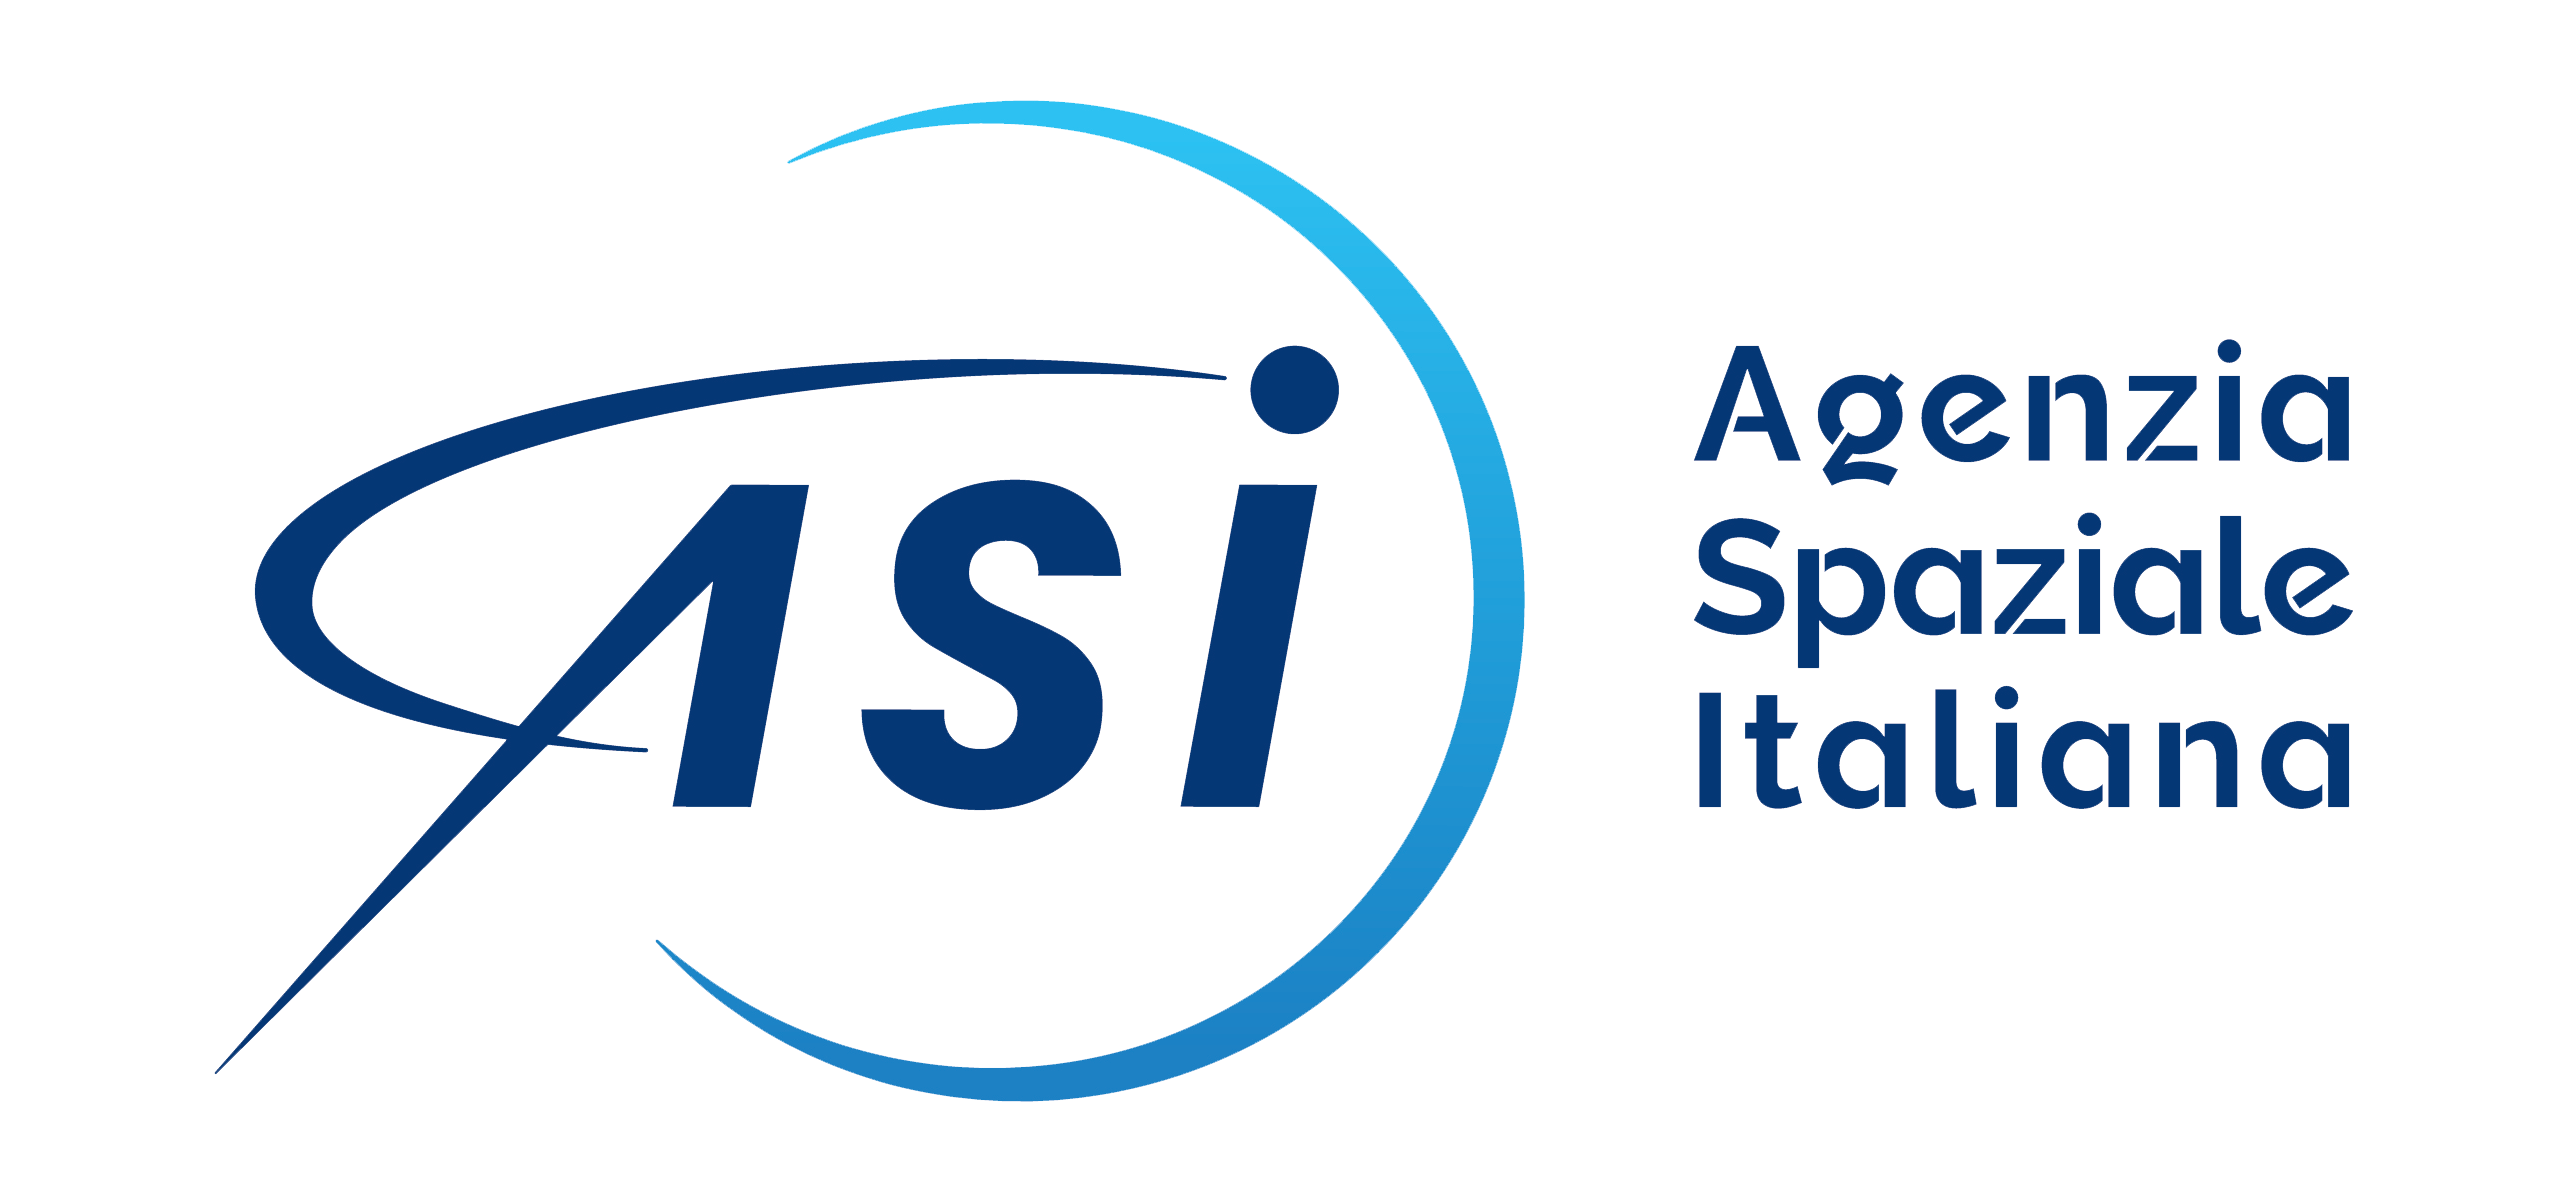 Agenzia Spaziale Italiana (ASI)